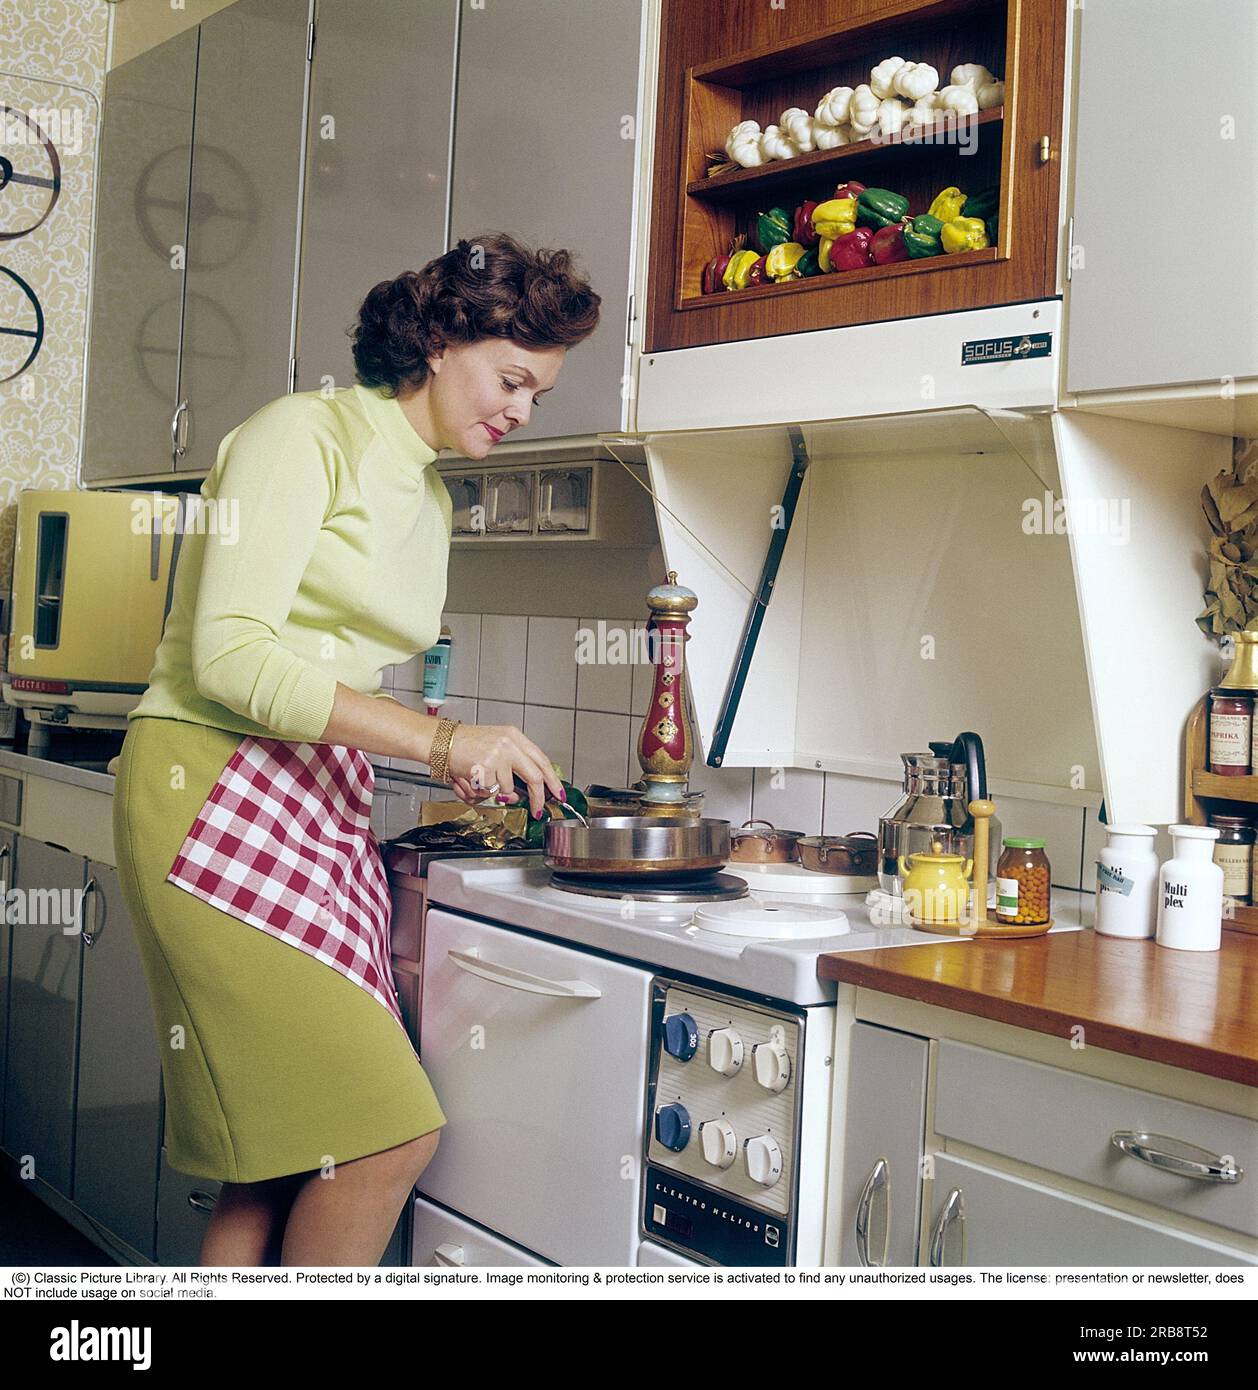 Haide Göransson (1928-2008) acteur et mannequin suédois. Ici, à la maison, dans la cuisine où elle se tient près de la cuisinière et cuisine, dans le coin se trouve un lave-vaisselle de comptoir rond de la marque electrolux, également appelé la canette ronde, quelque chose qui est facile à comprendre car le lave-vaisselle a la forme ronde étrange. Suède 1968. Kristoffersson Banque D'Images